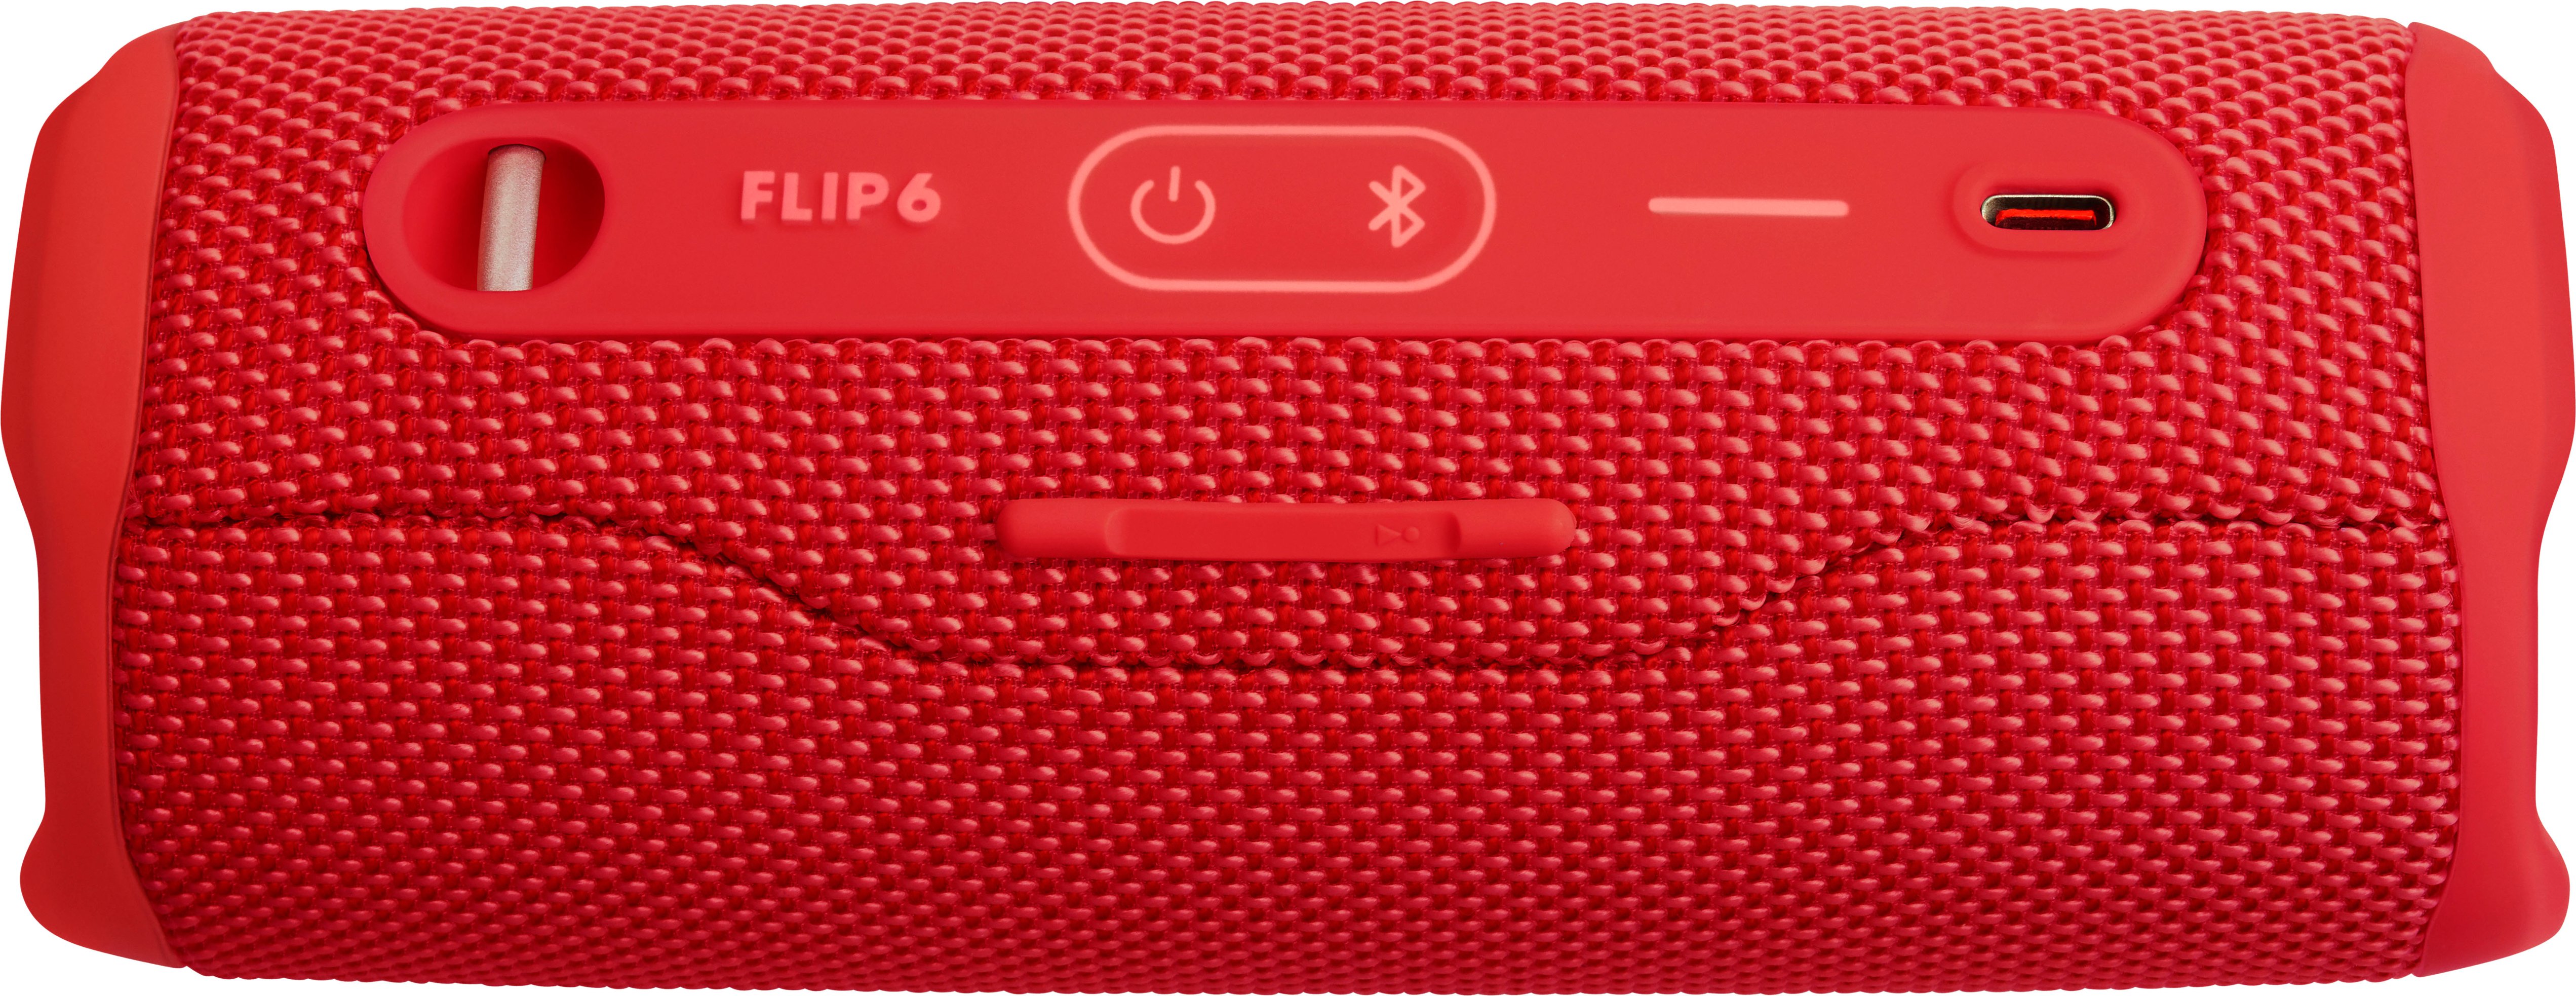 JBL FLIP6 Portable Waterproof Speaker - Red Best JBLFLIP6REDAM Buy